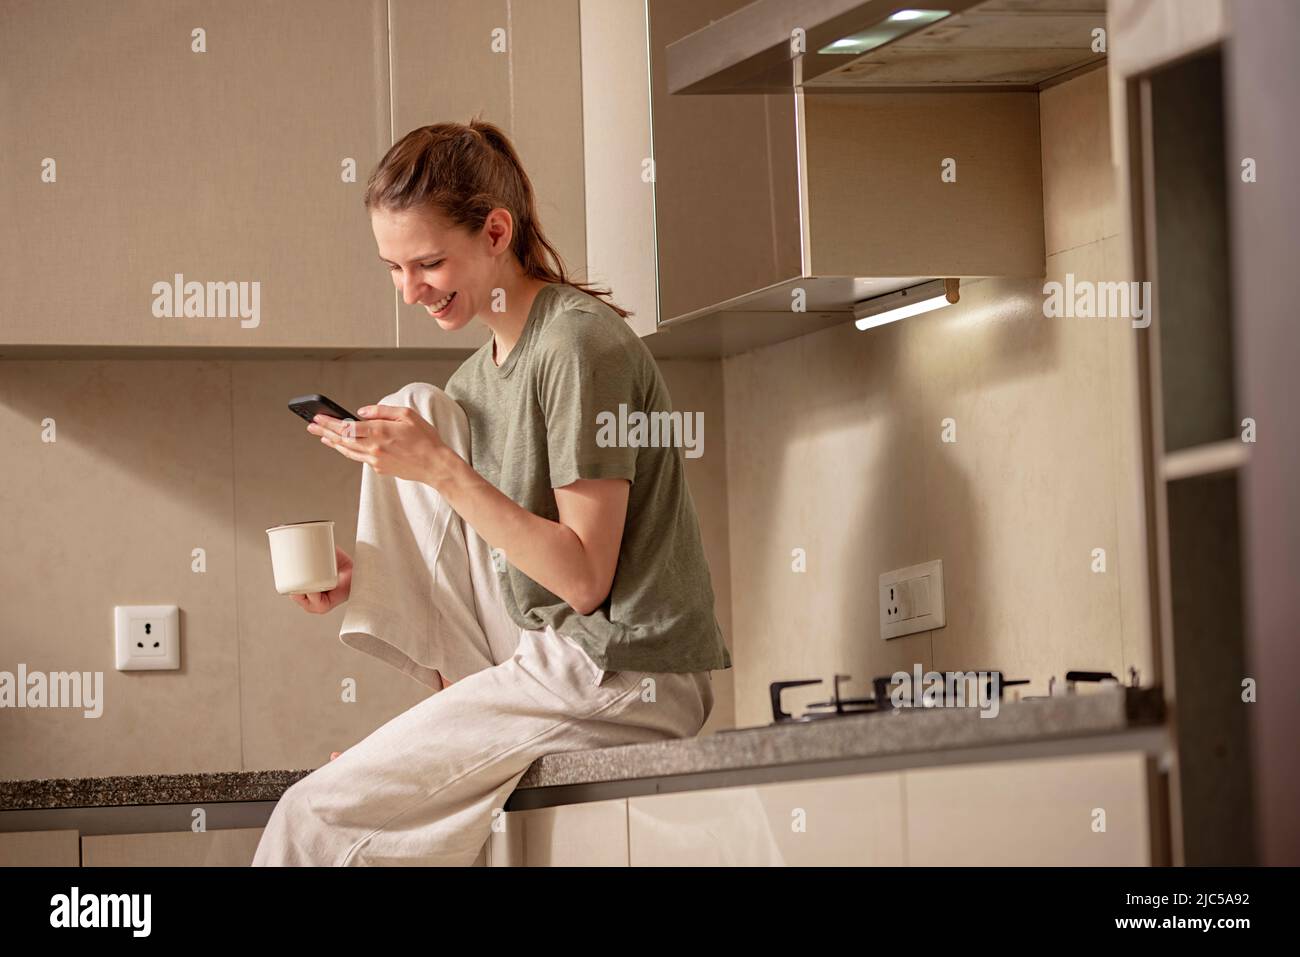 Mujer joven sentada en la cocina y usando un teléfono móvil Foto de stock